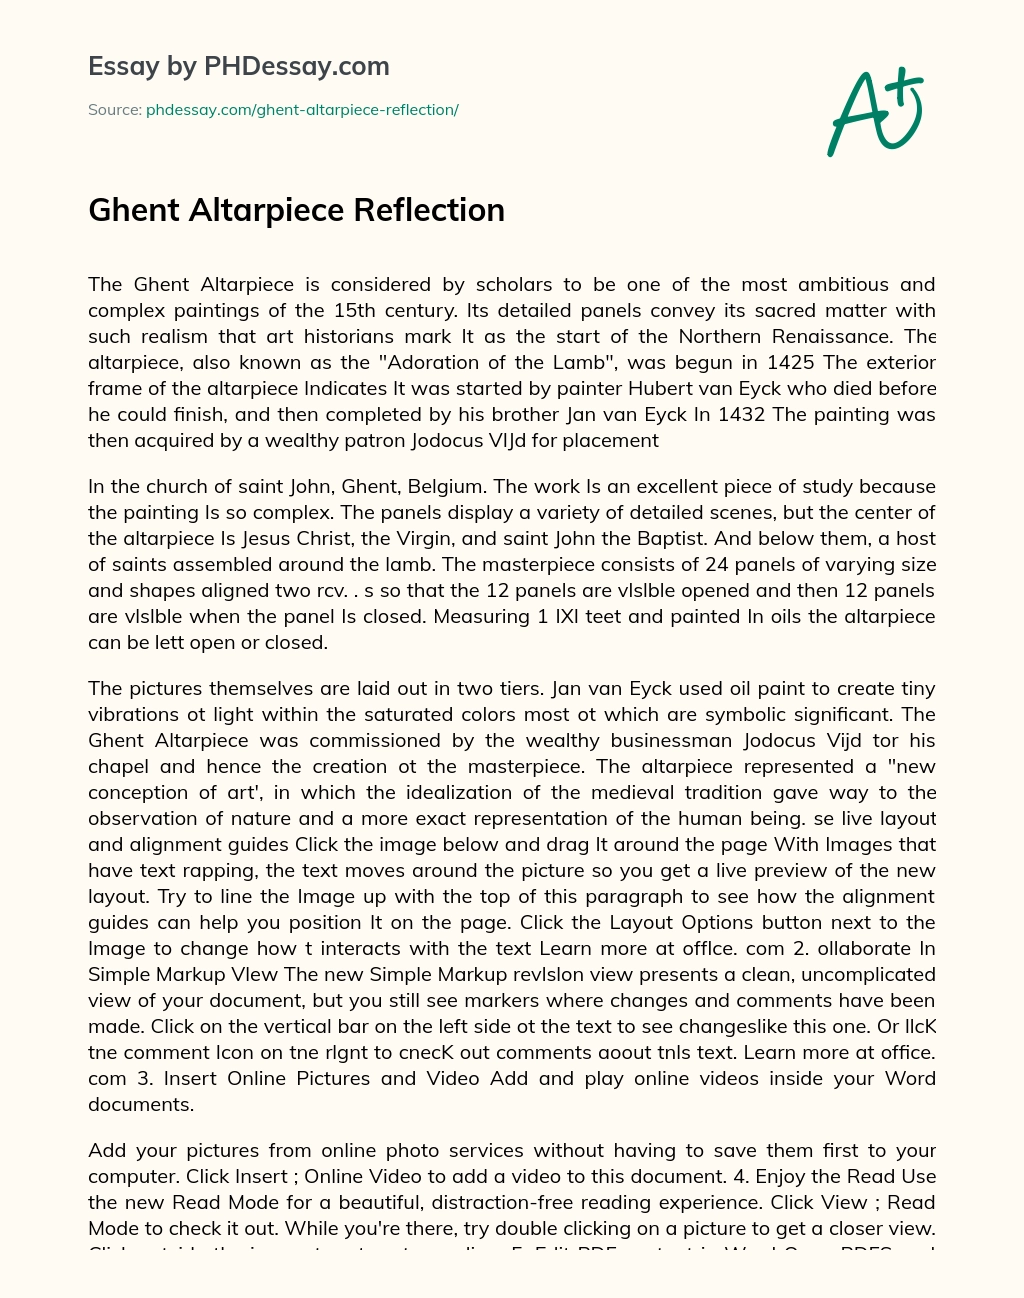 Ghent Altarpiece Reflection essay